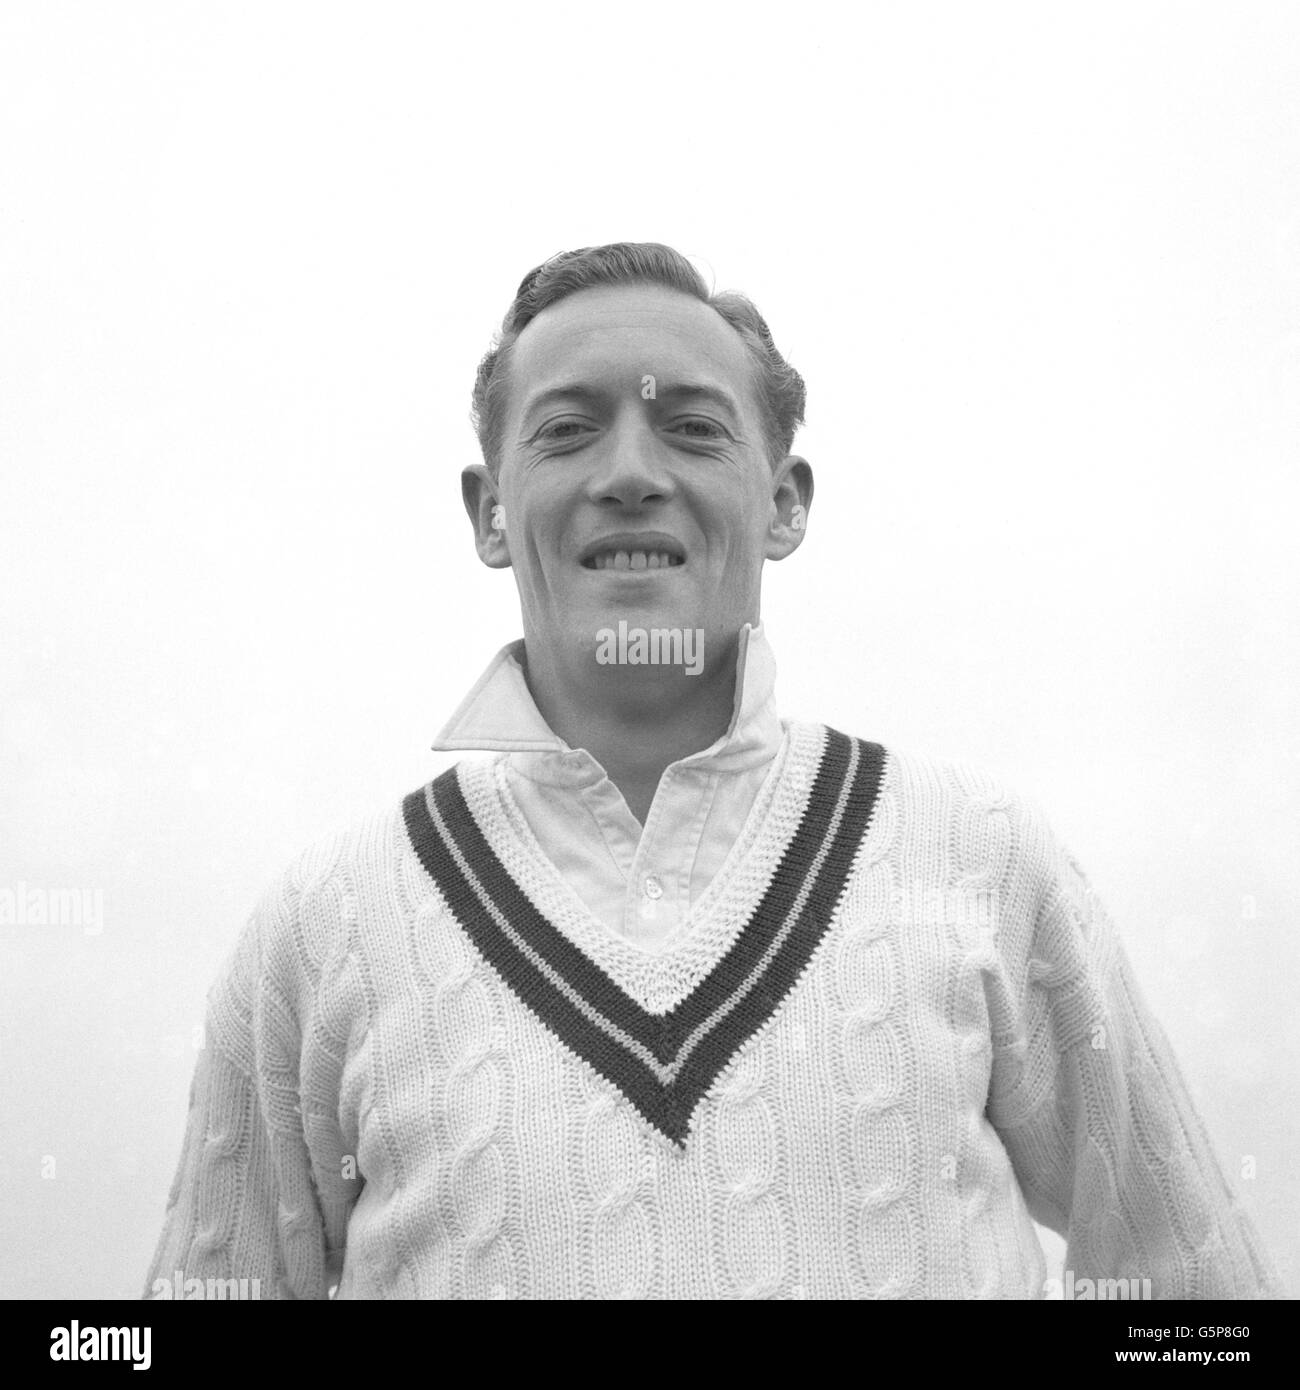 Neil Amwin Treharne Adcock, schneller Bowler der südafrikanischen Cricket-Mannschaft, die jetzt England bereist. Adcock, der 1955 auf der vorherigen Tour war, gilt heute als schnellerer und genauer Bowler. Stockfoto